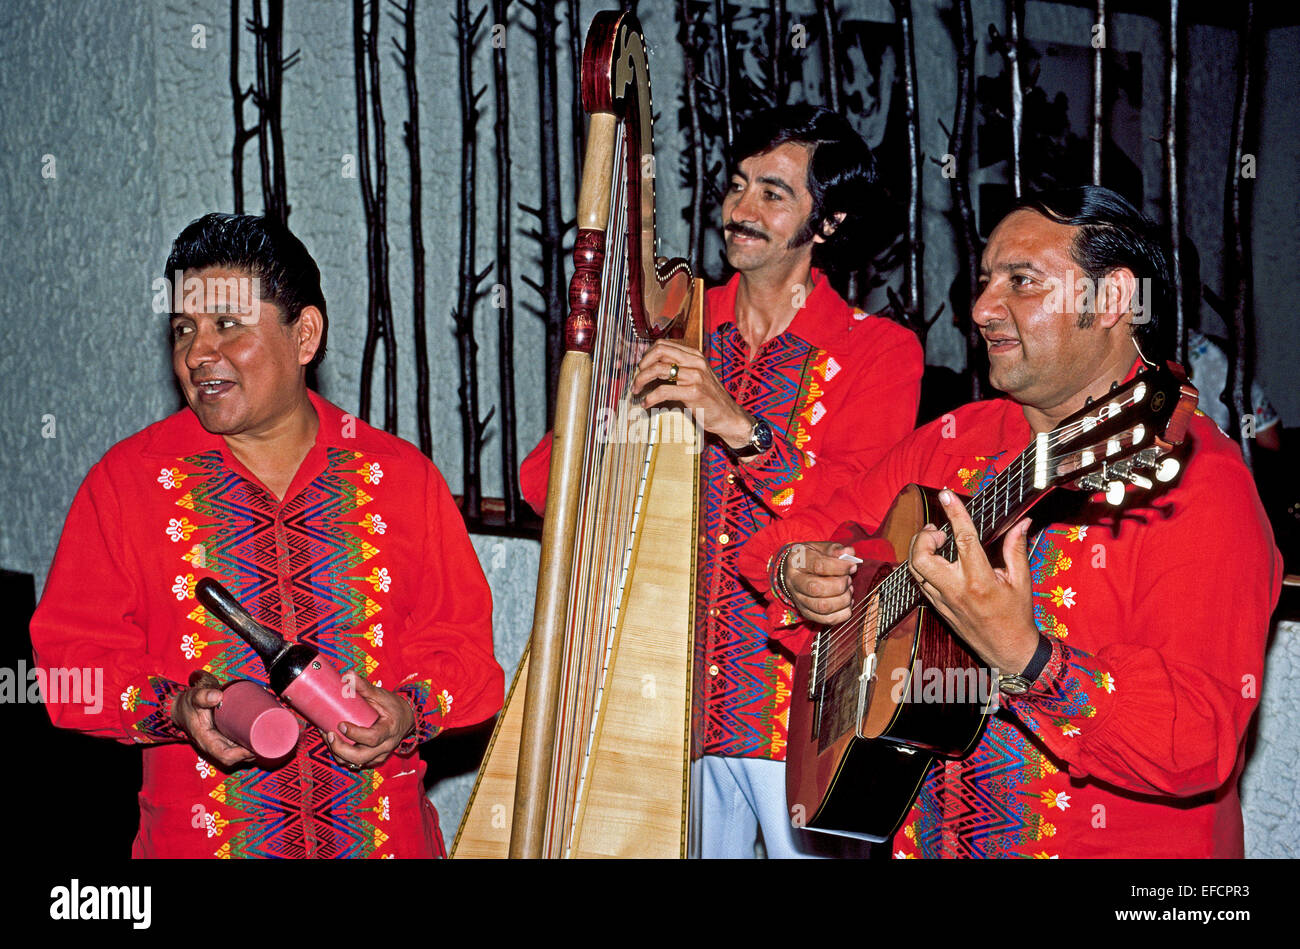 Tre musicisti guatemalteco con le maracas, arpa e chitarra eseguire per gli ospiti dell'hotel nella città di Guatemala, Guatemala, America centrale. Foto Stock